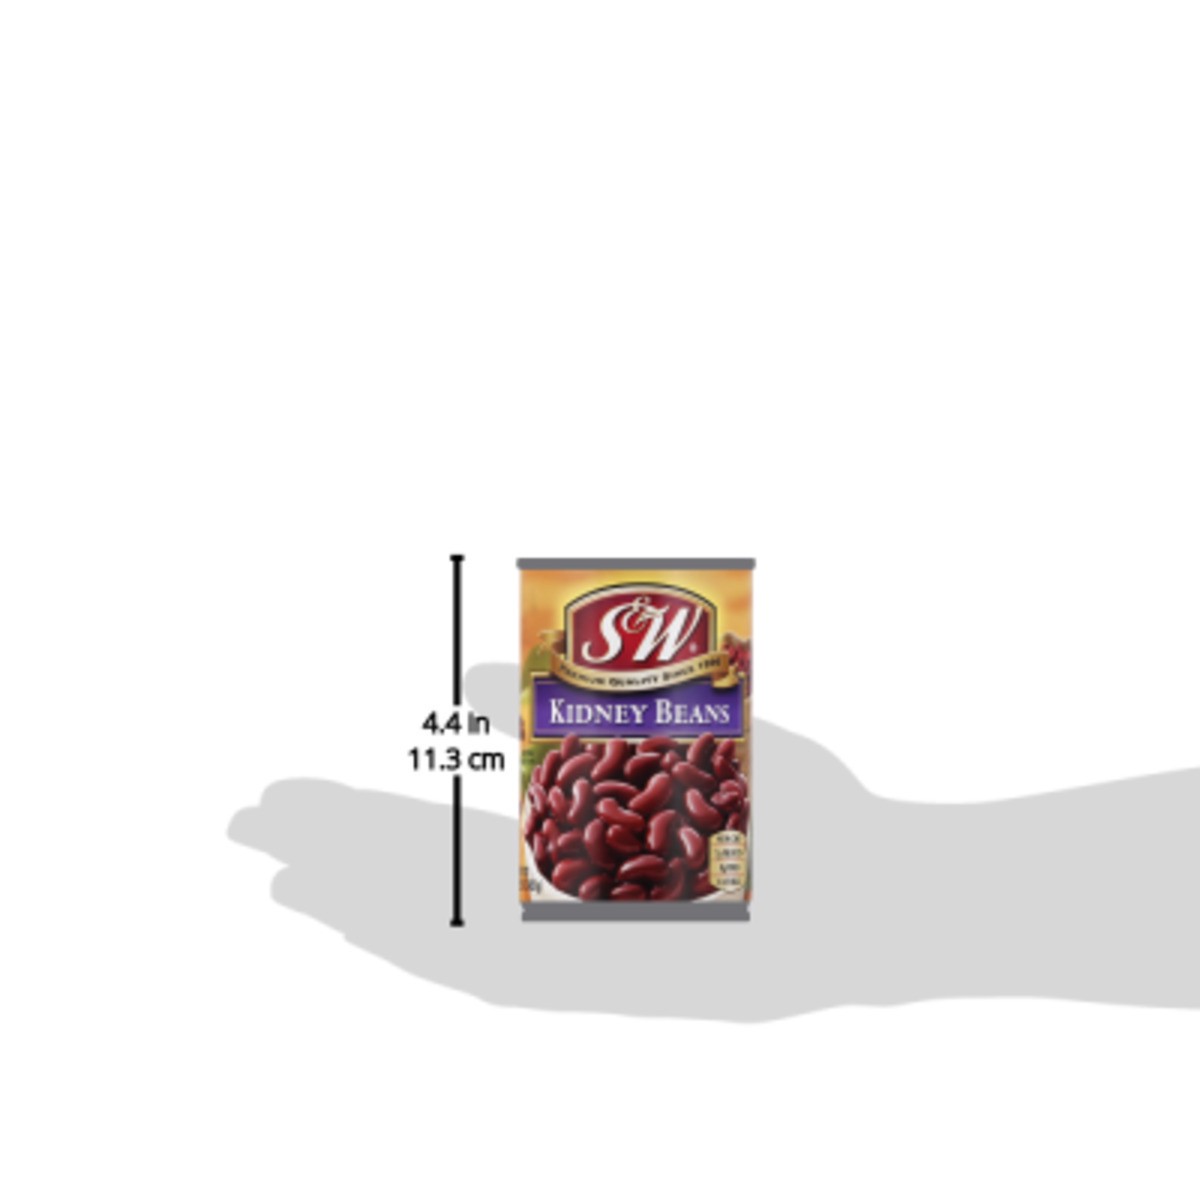 slide 6 of 11, S&W Kidney Beans 15.5 oz, 15.5 oz